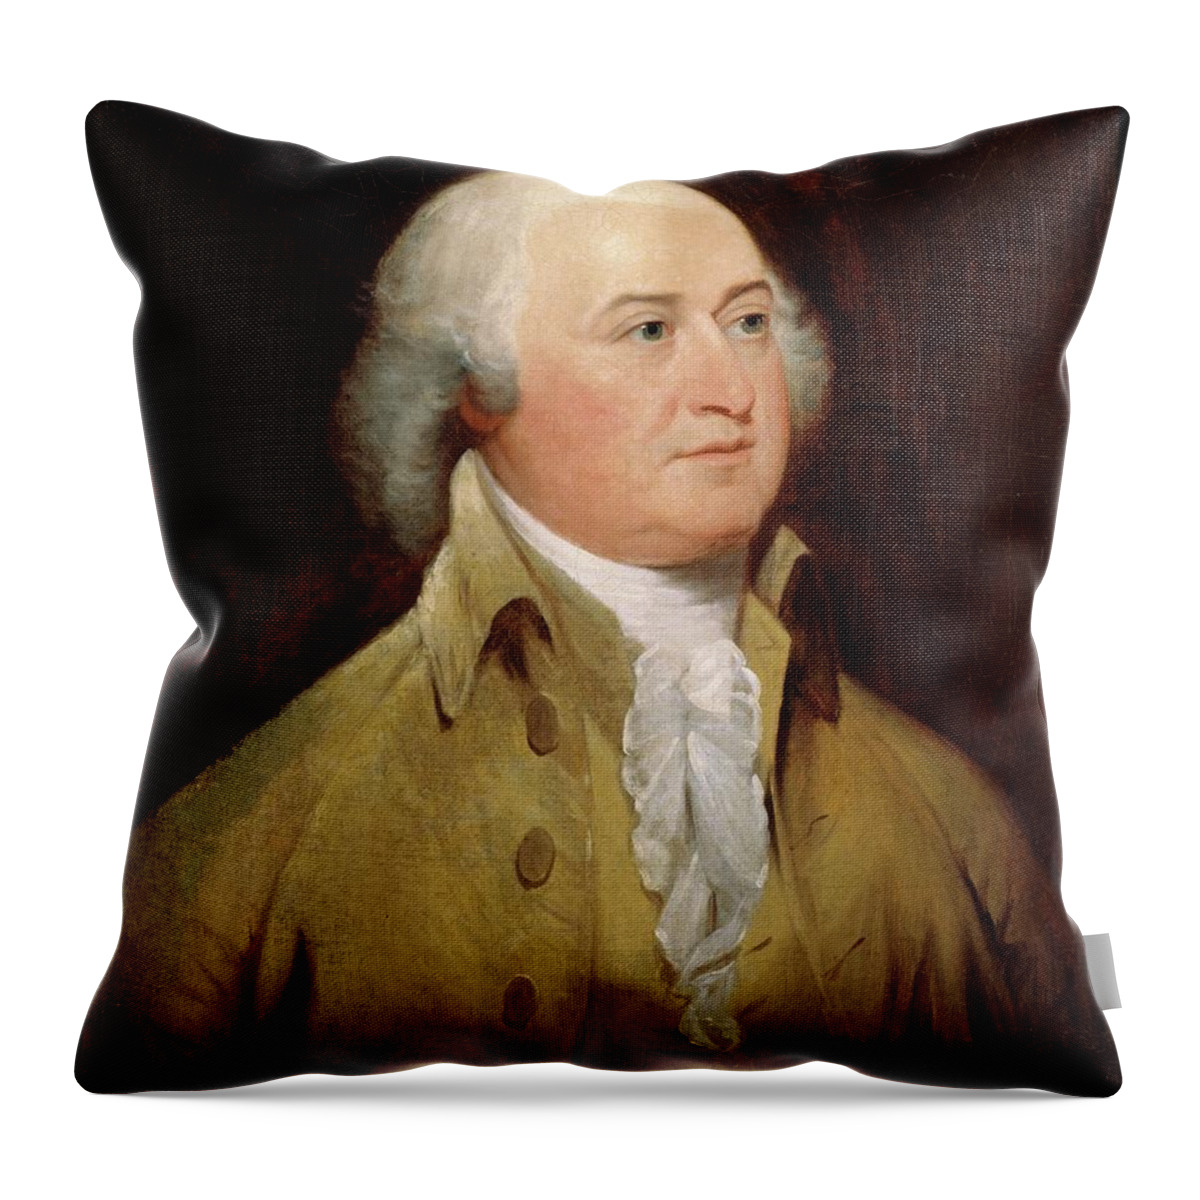 John Adams Throw Pillow featuring the painting John Adams by John Trumbull